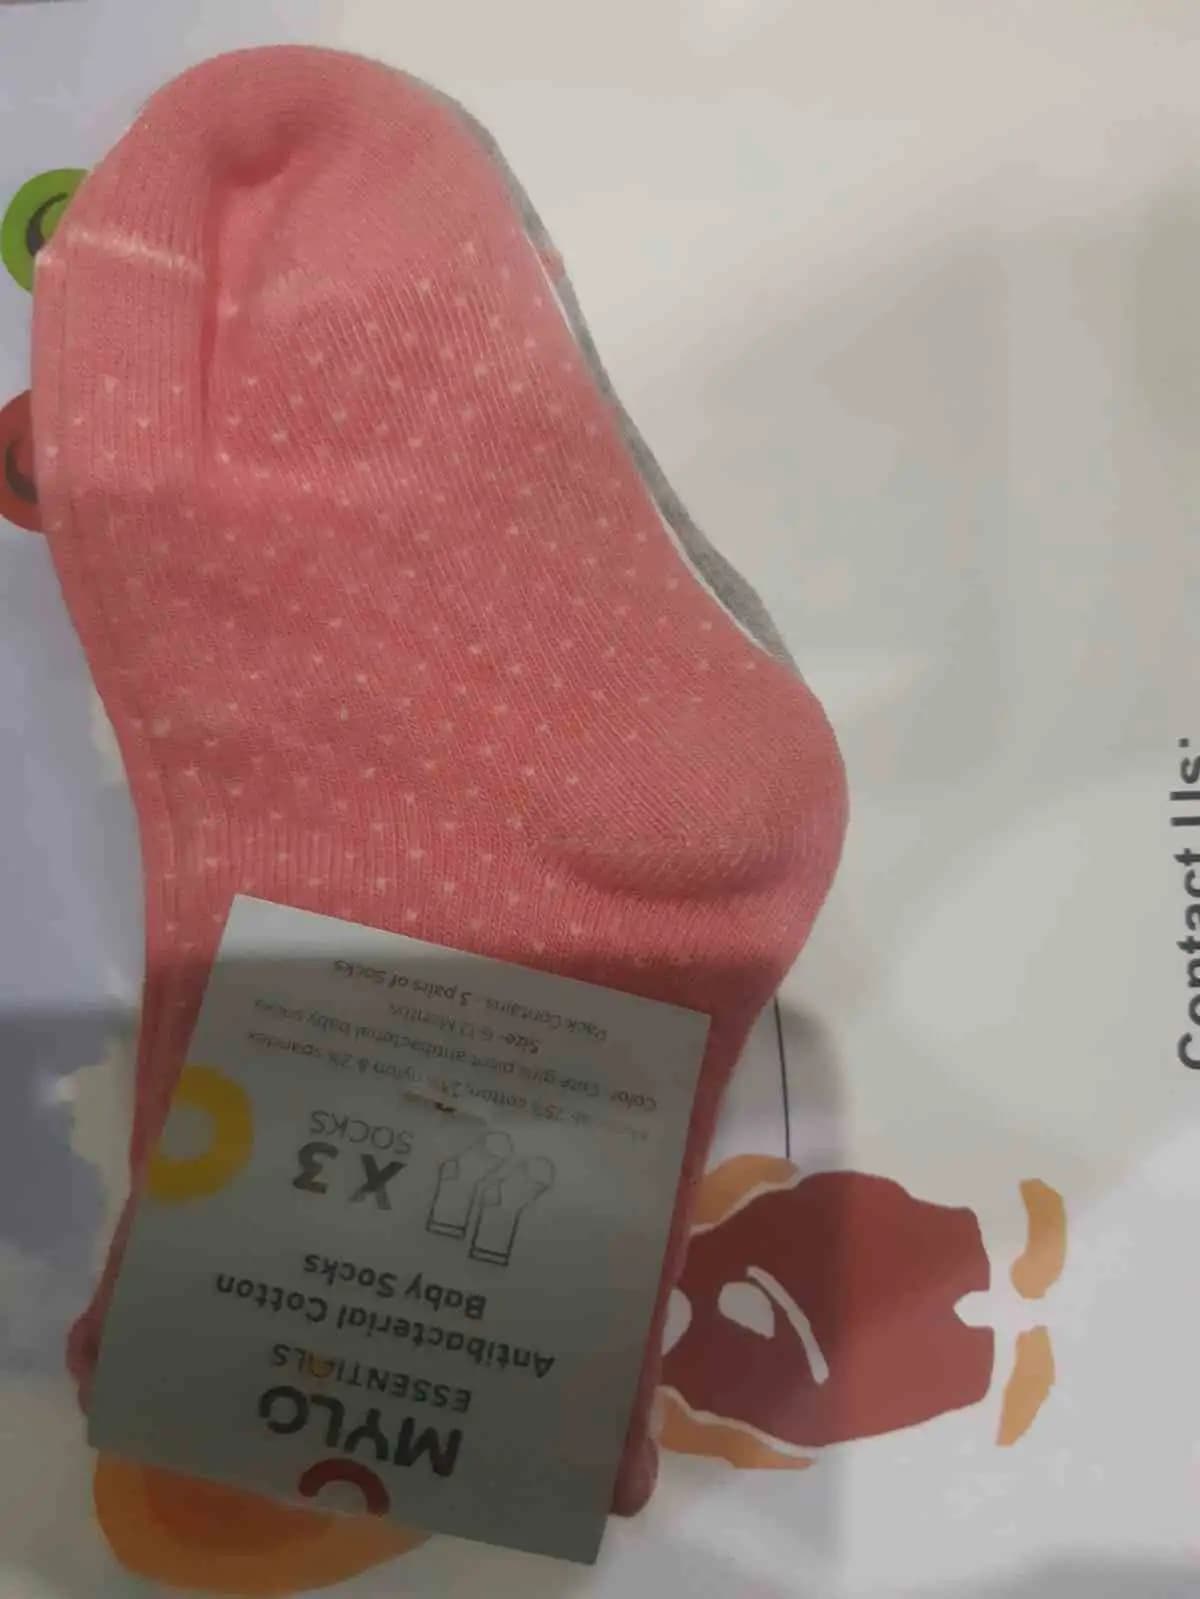 Antibacterial Baby Socks - Elasticated & Ankle Length - (6-12 Months) Unisex Dark Nights